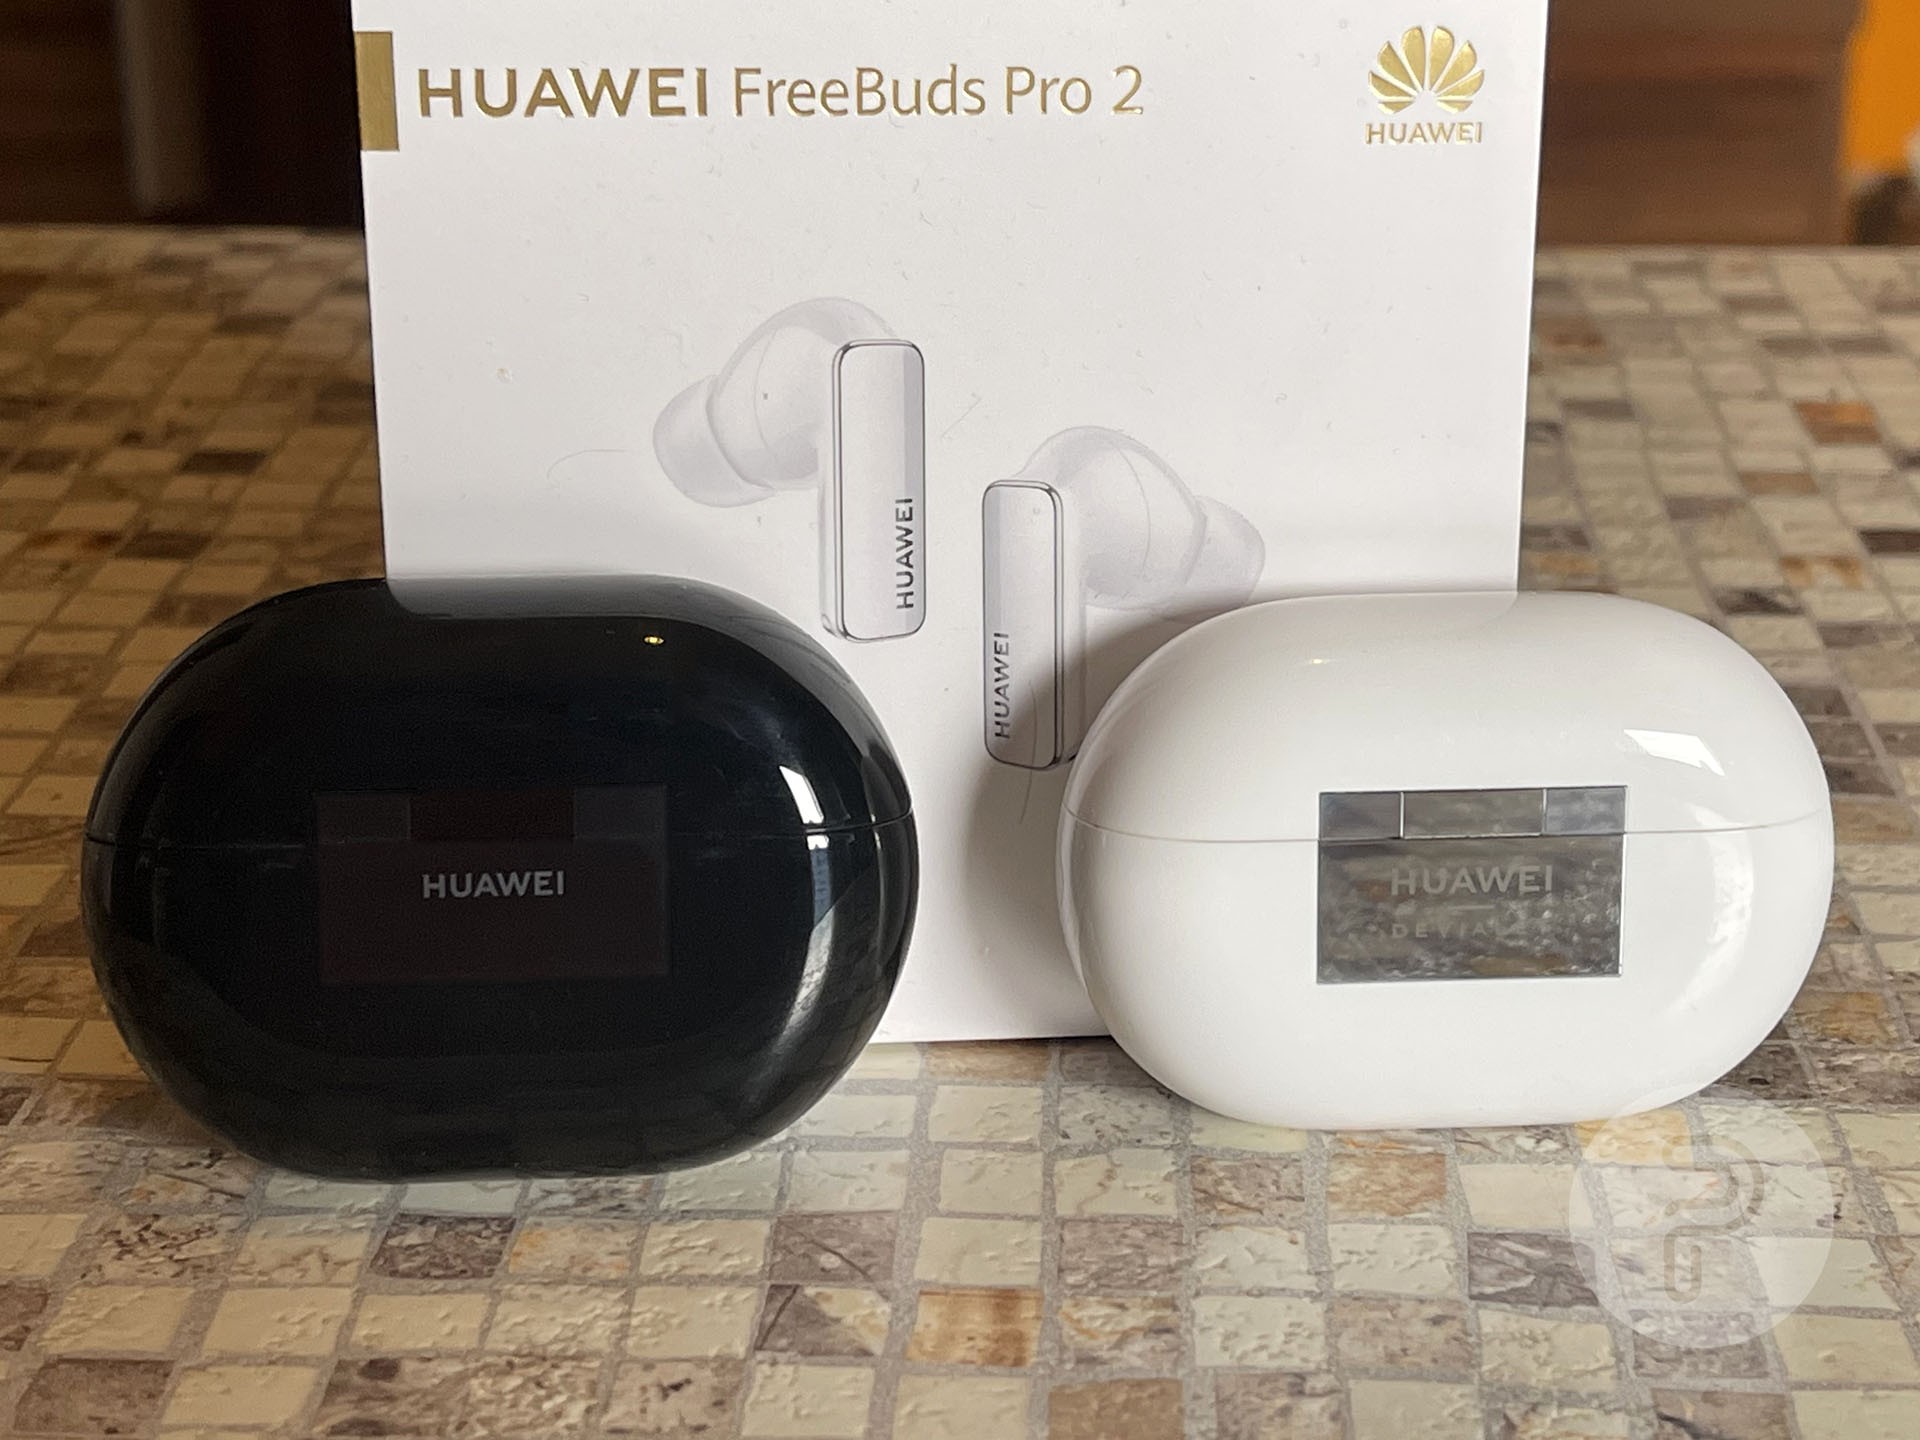 FreeBuds Pro and FreeBuds Pro 2